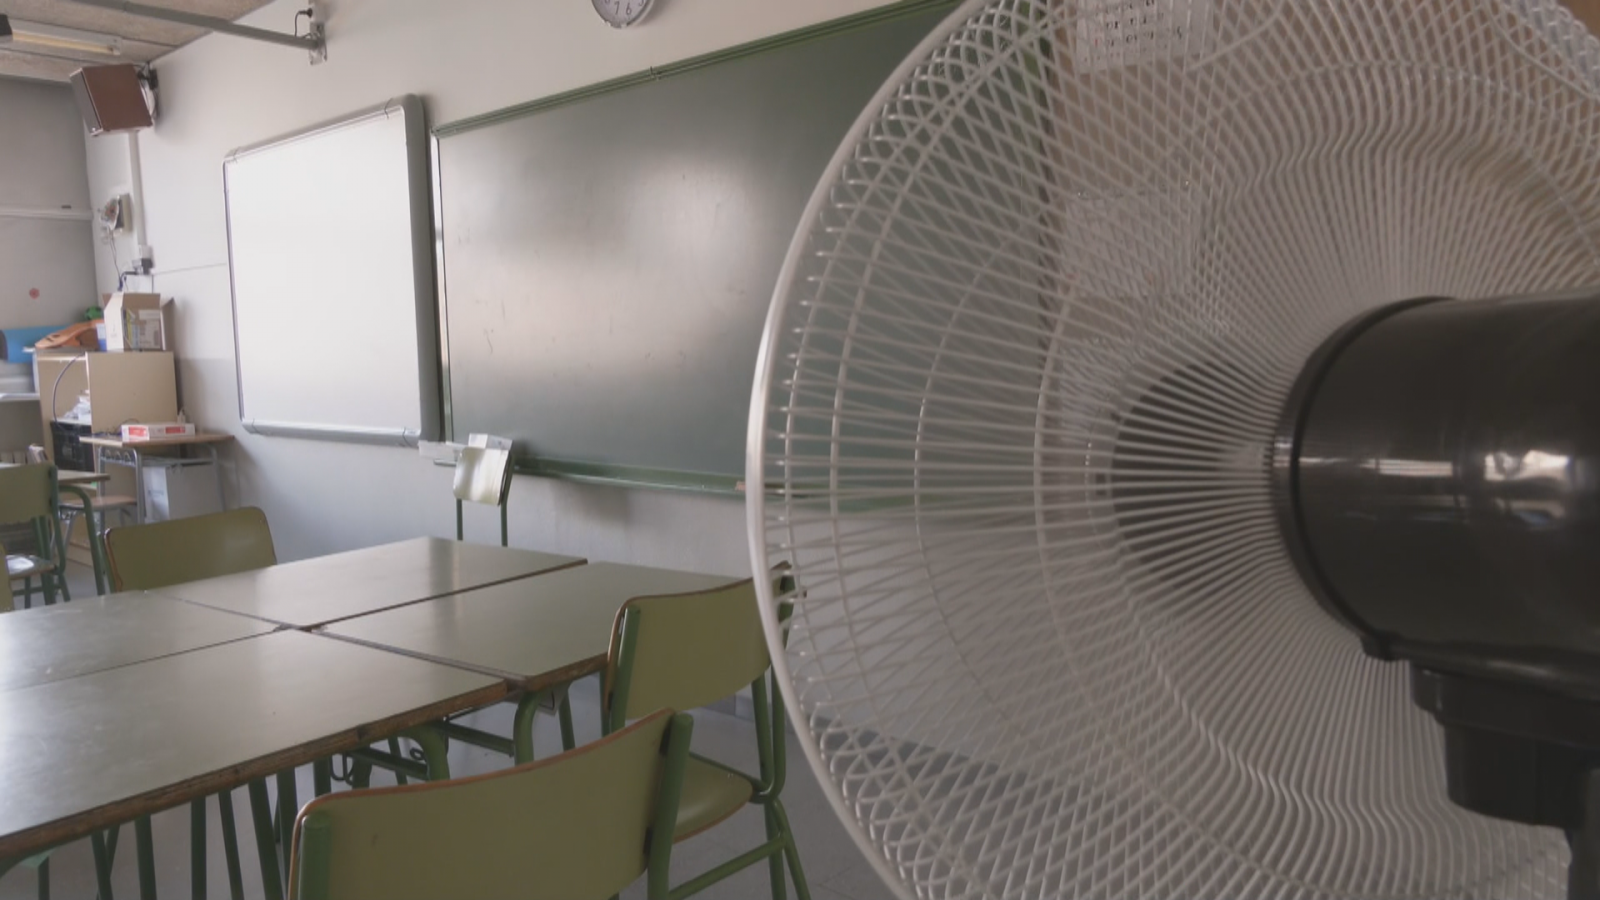 Barcelona començarà a climatitzar aquest estiu 24 centres educatius